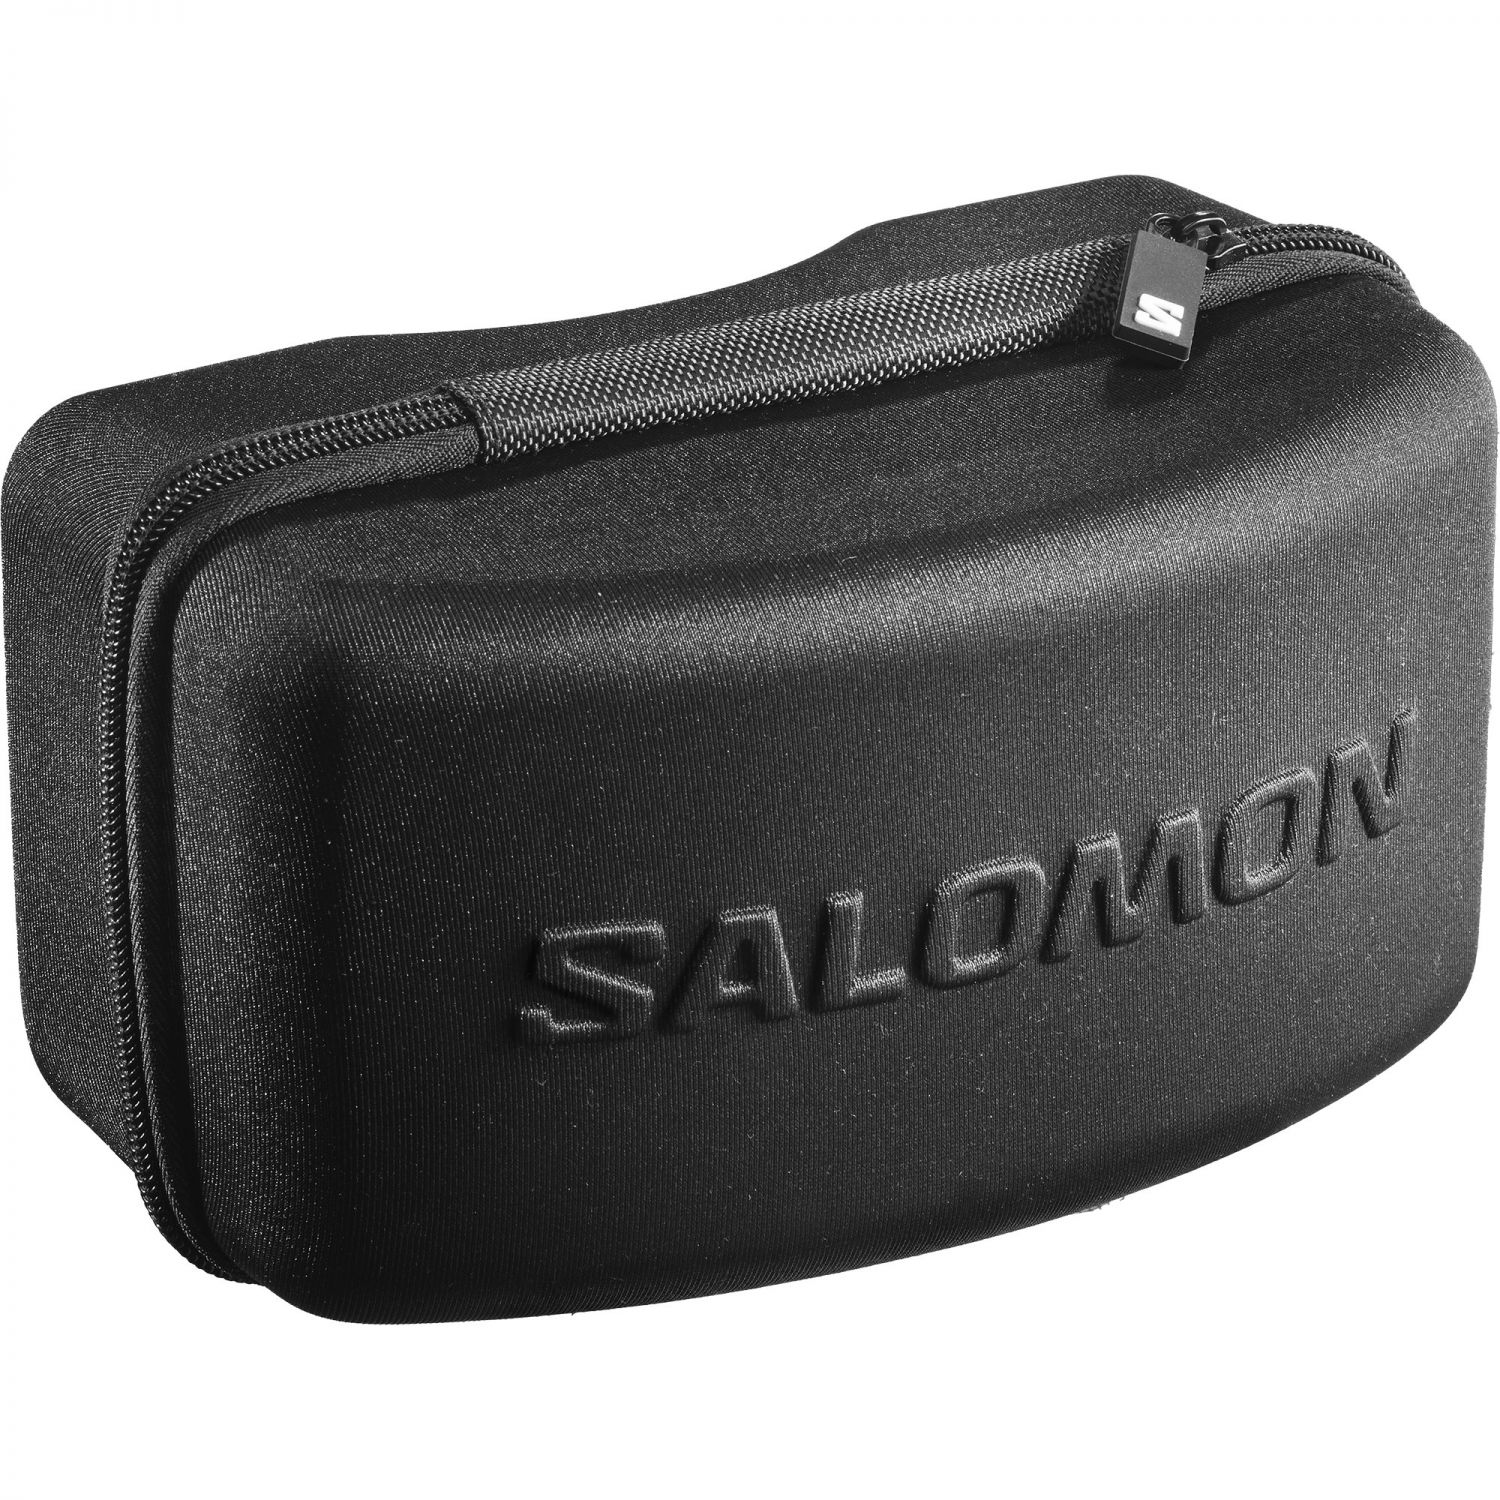 Salomon Sentry Pro Sigma, masque de ski, gris/bleu